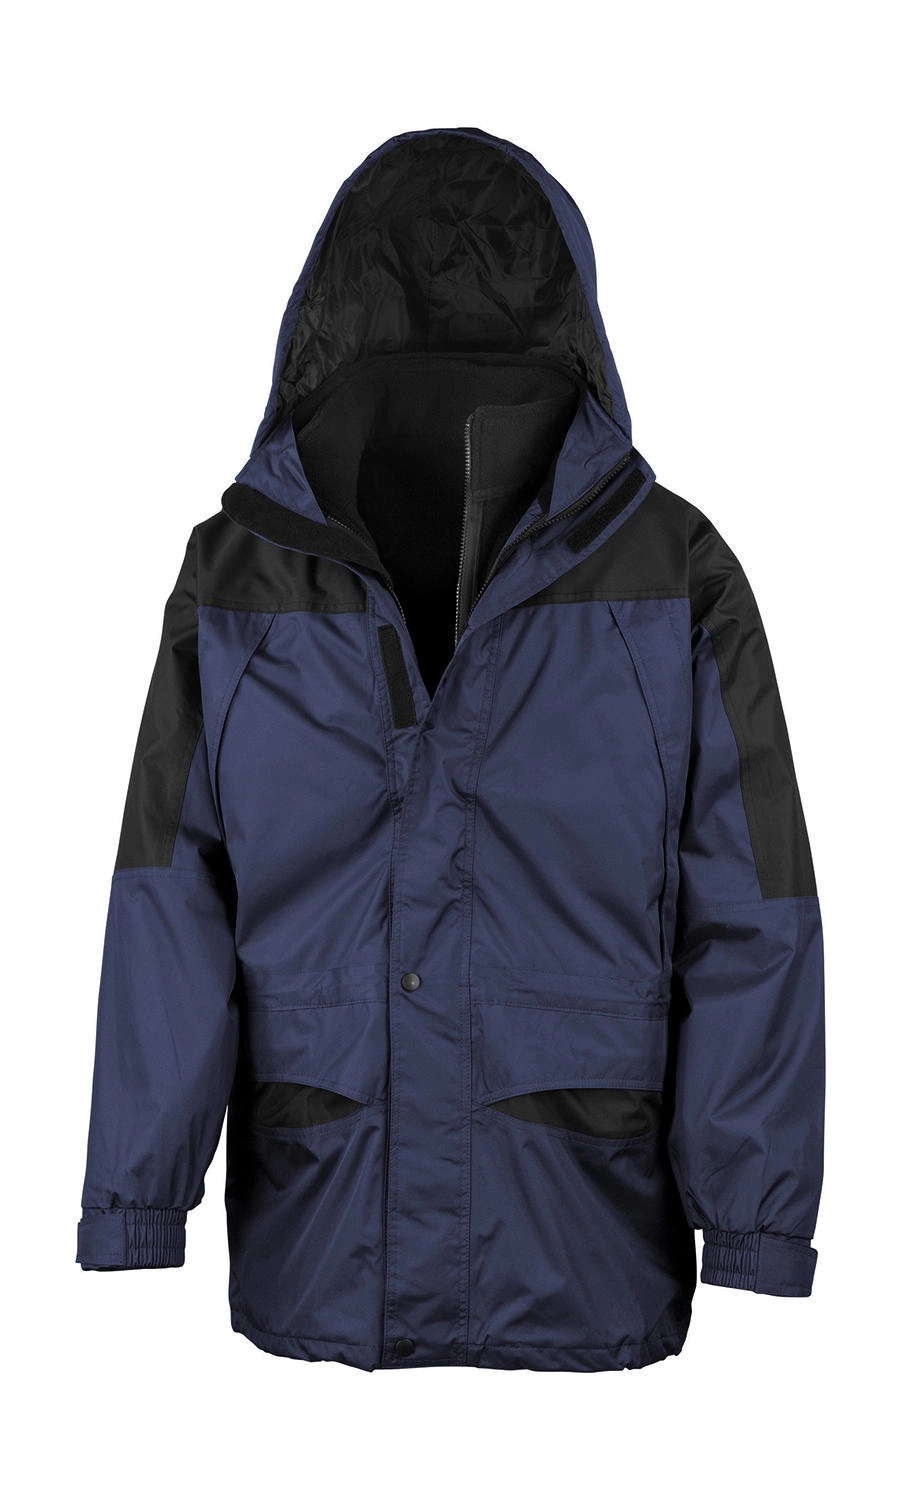 Alaska 3-in-1 Jacket zum Besticken und Bedrucken in der Farbe Navy/Black mit Ihren Logo, Schriftzug oder Motiv.